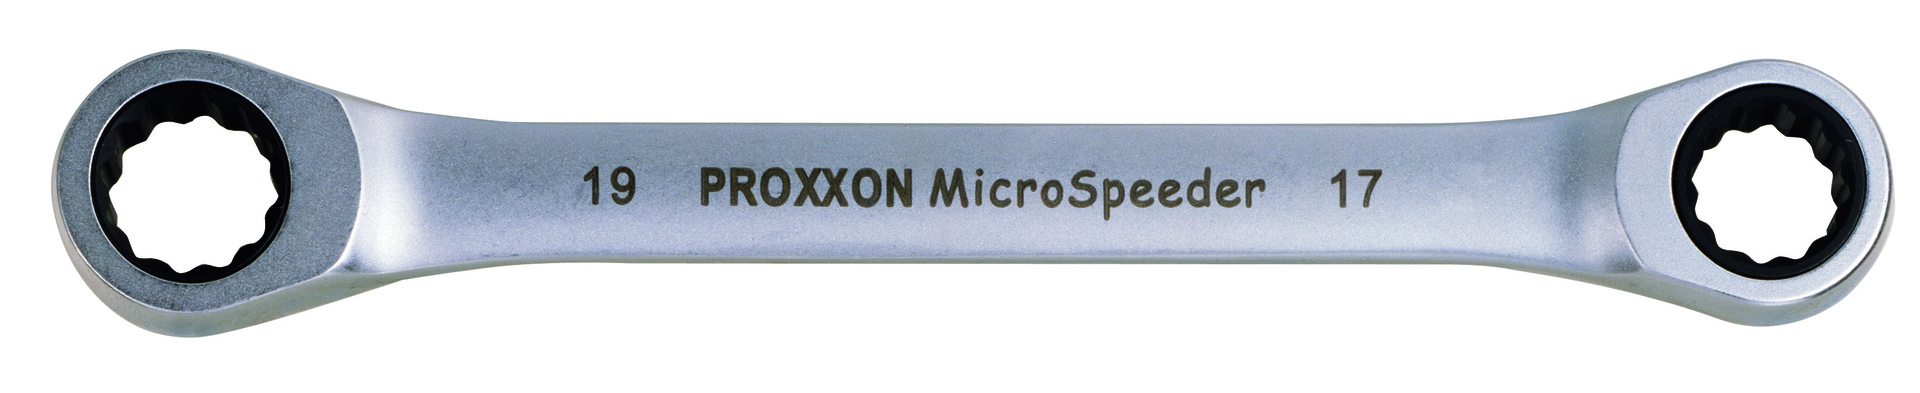 PROXXON GmbH Micro-Speeder Ratschenschlüssel 8x9mm